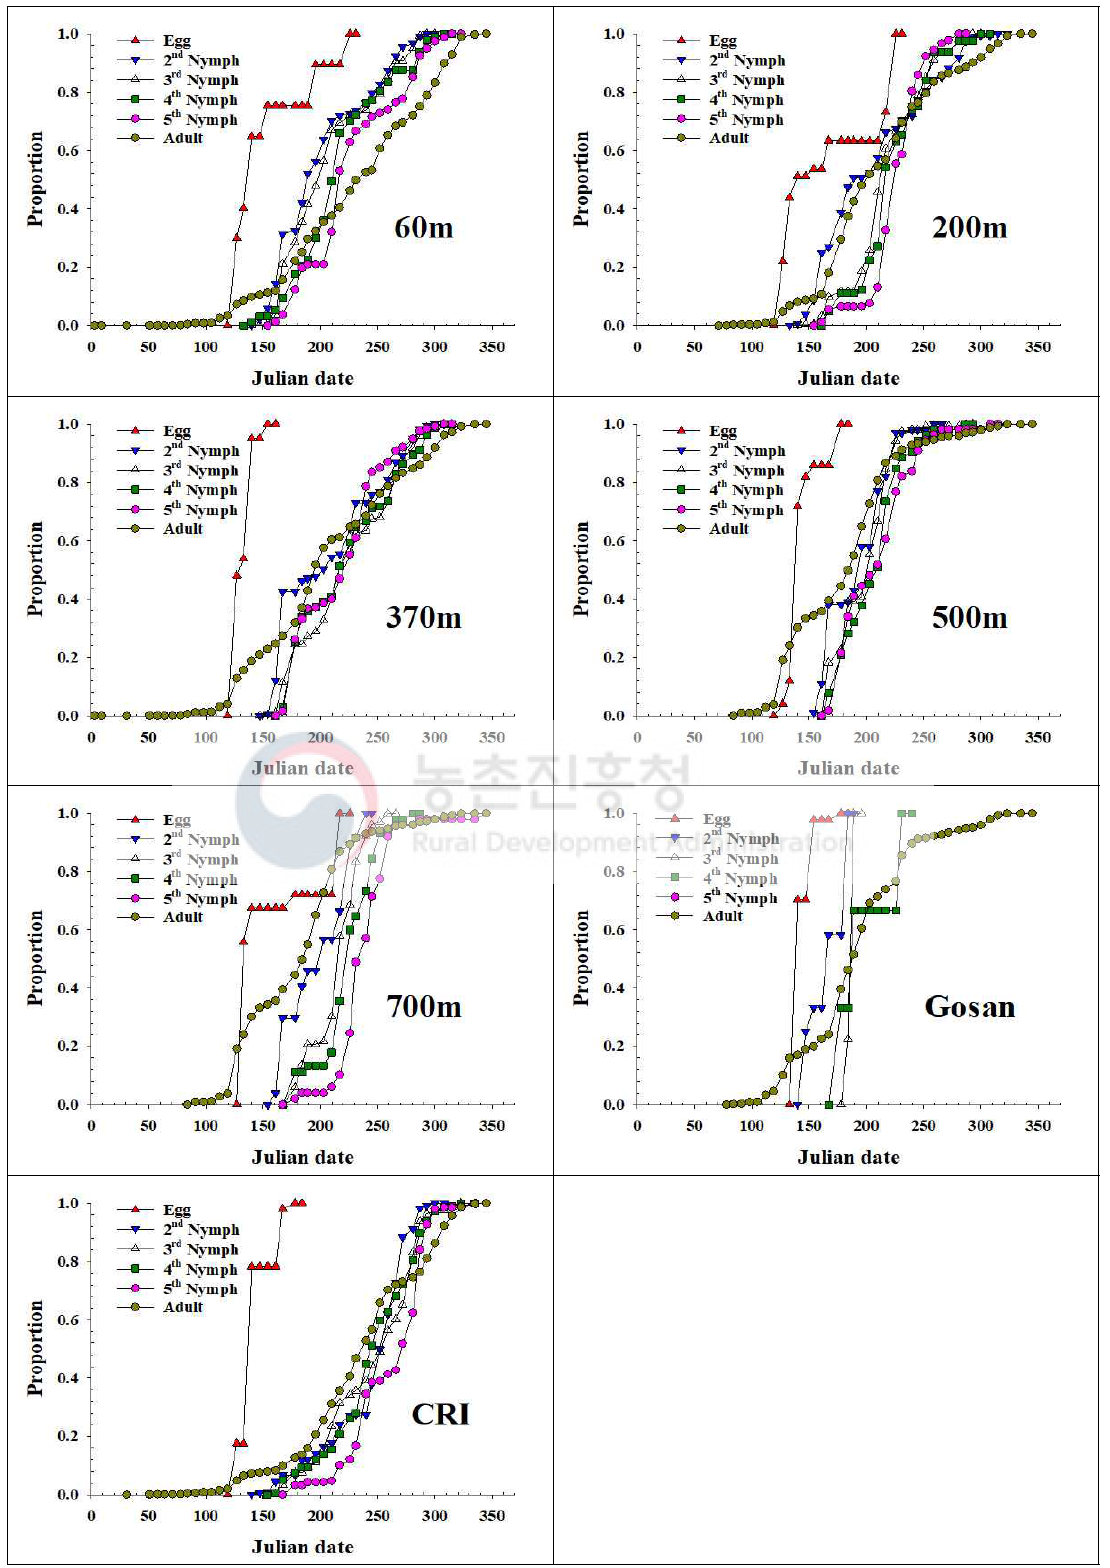 제주지역 톱다리개미허리노린재 발육단계별 개체수 누적증가 비교(2020)